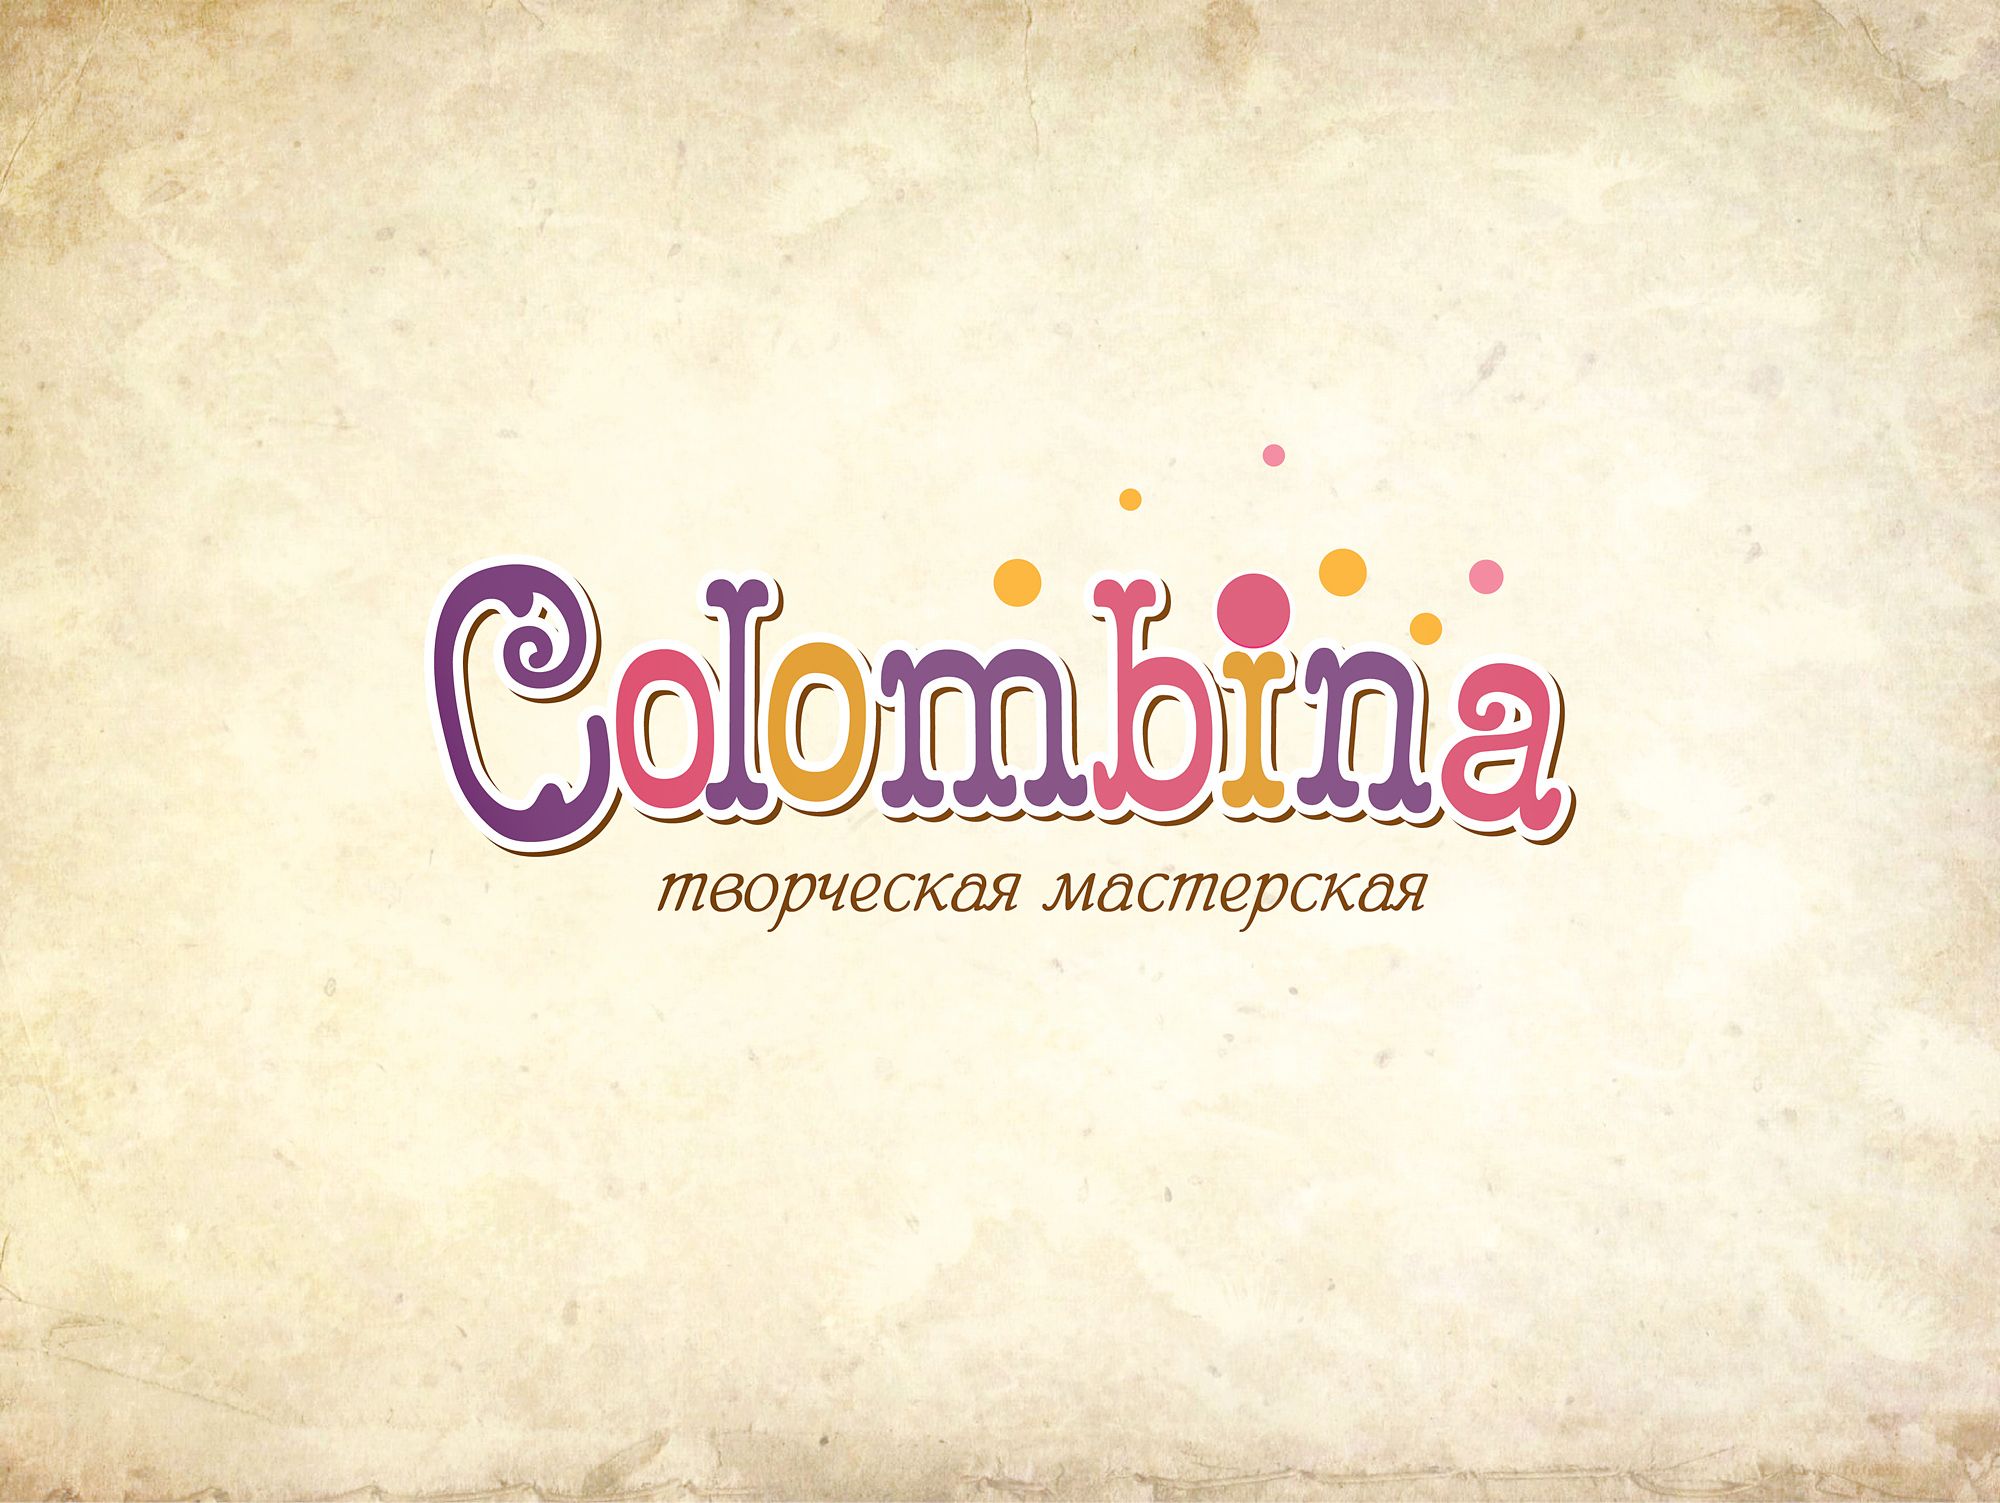 Логотип для Творческая мастерская Colombina - дизайнер kokker